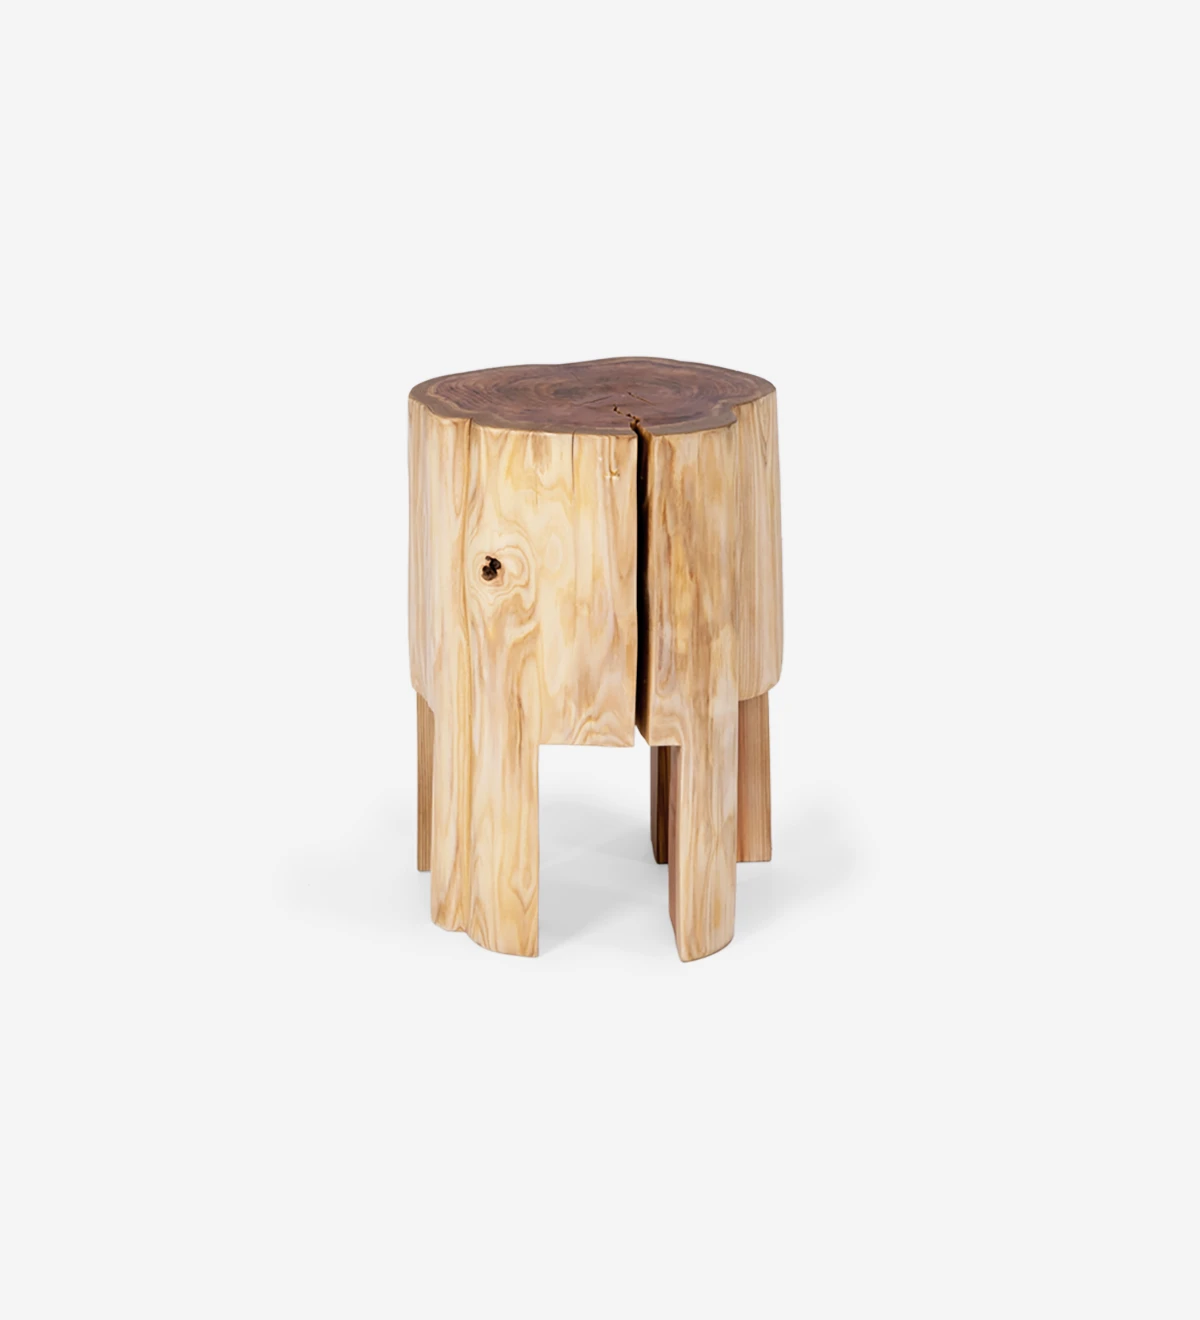 Table d'Appui Tronc Malmo en bois naturel de cryptoméria, Ø 30 à 40 cm.